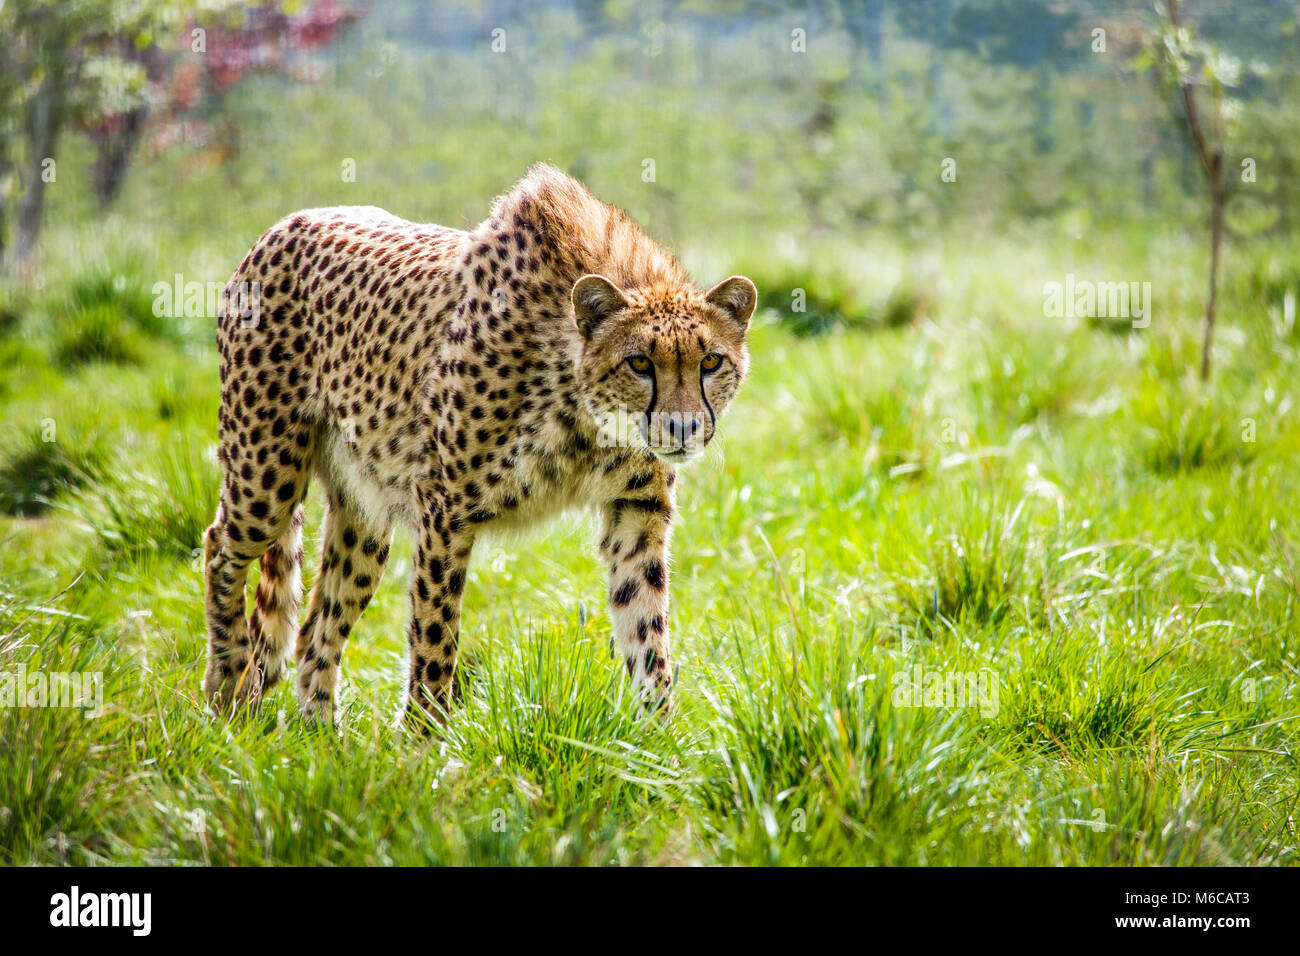 Caminar a través de la hierba de guepardo retroiluminado Foto de stock